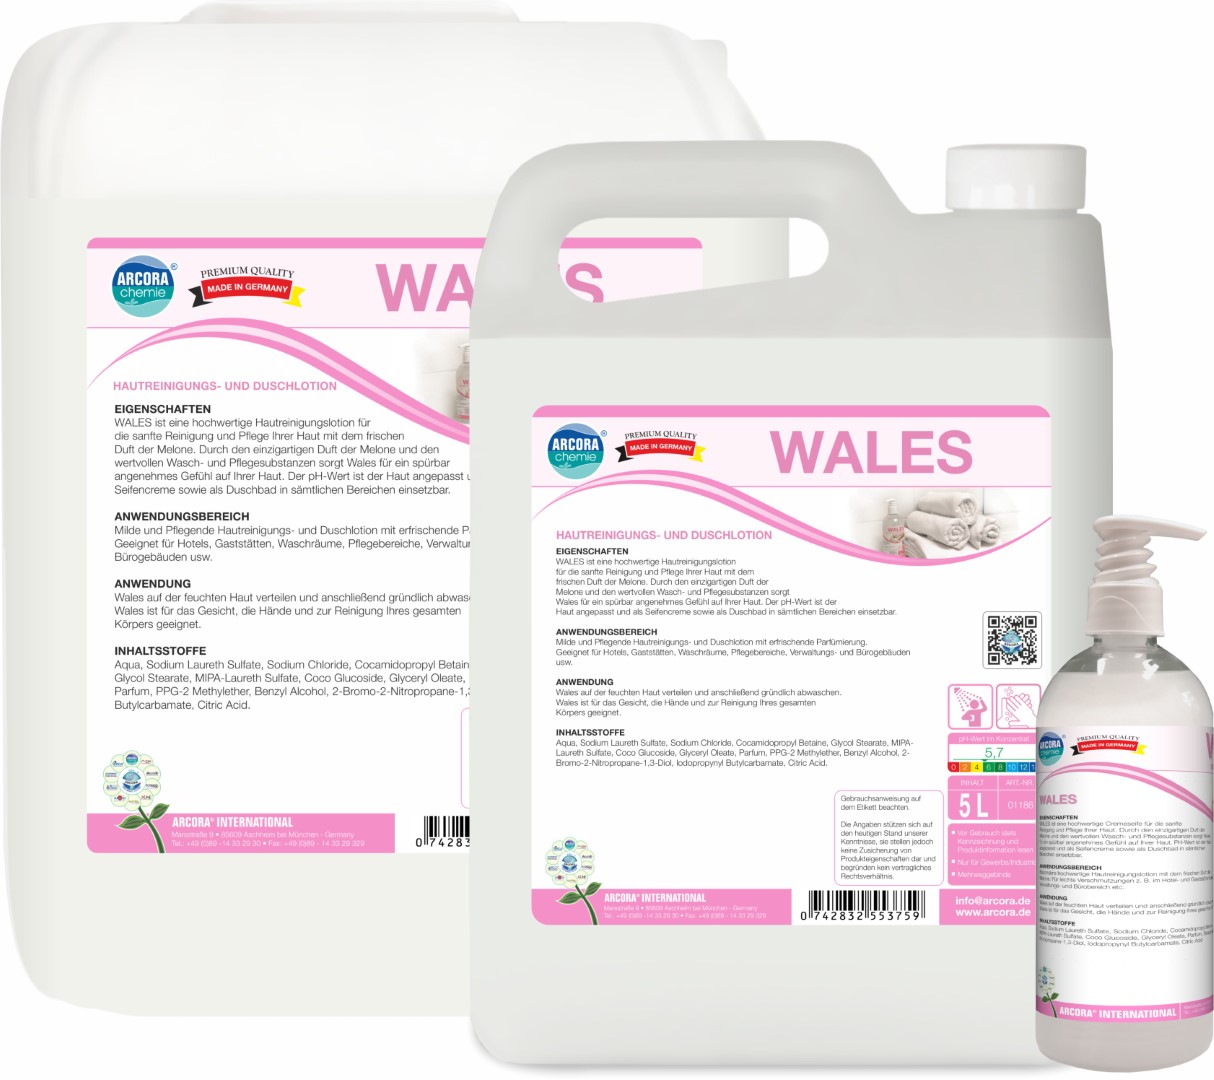 Wales | Hautreinigungs- & Duschlotion  | 10 Liter Kanister